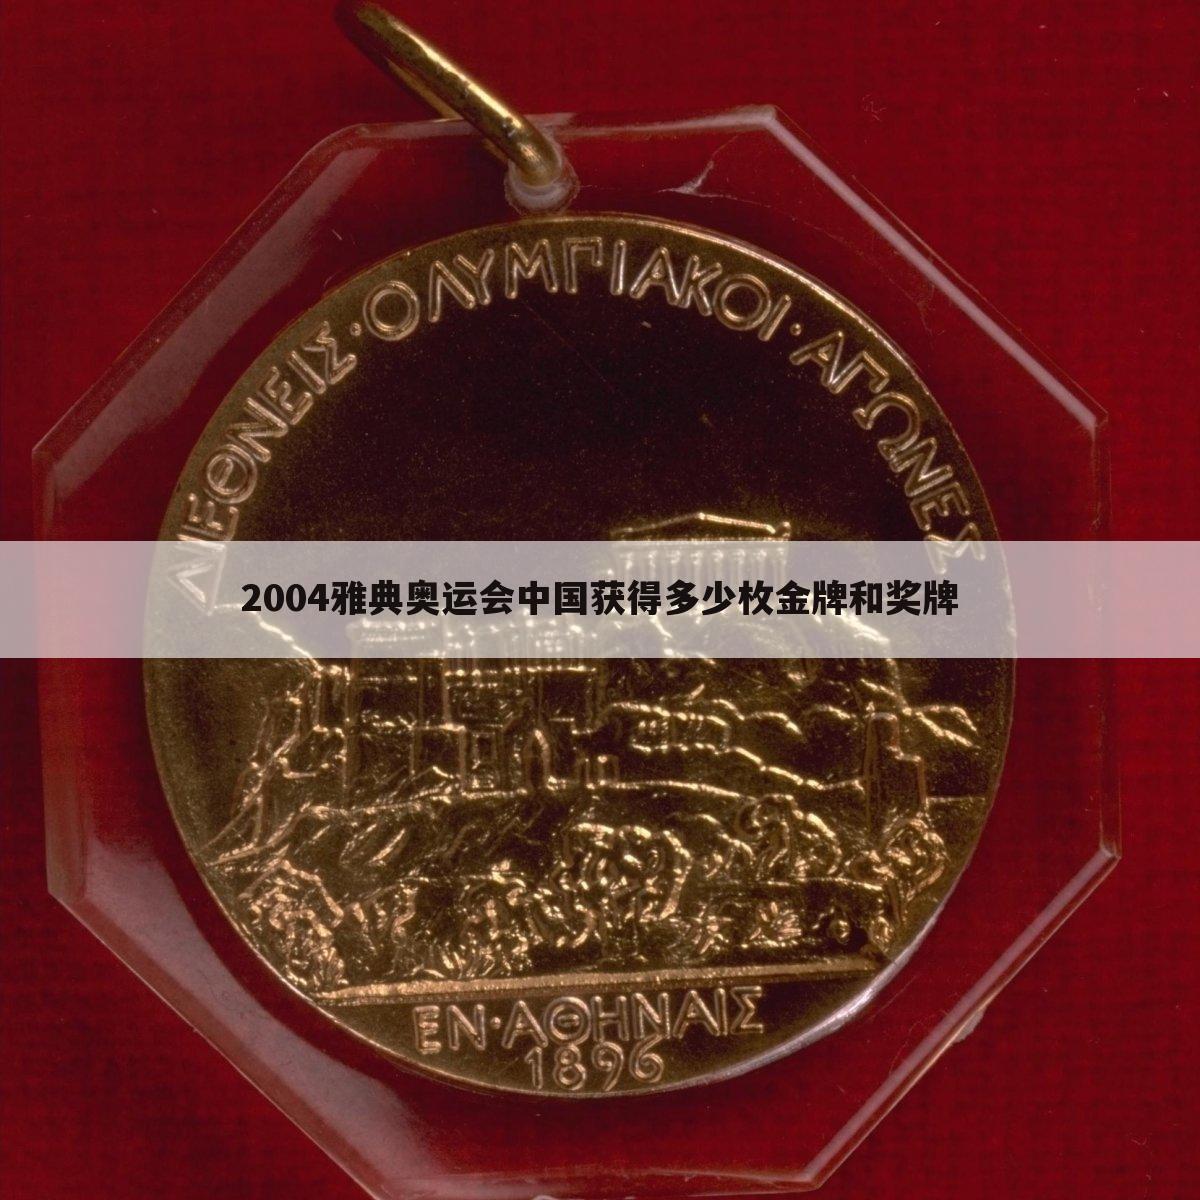 『雅典奥运会中国金牌数』2004雅典奥运会金牌